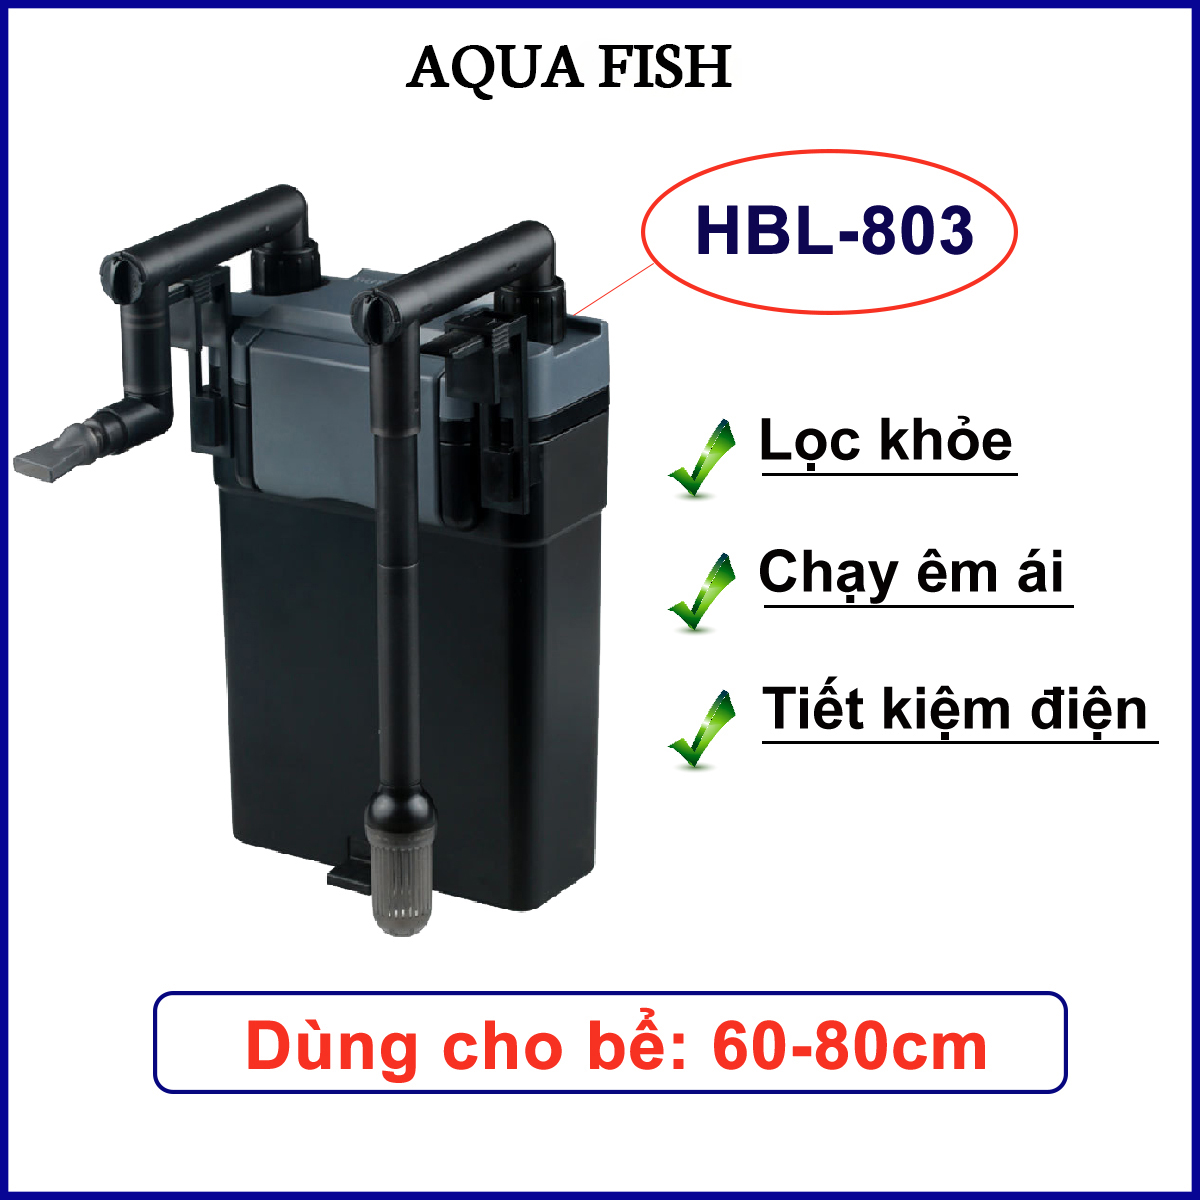 Lọc treo Sunsun HBL 803 cho bể cá cảnh lọc chạy khỏe, êm ái, tiết kiệm điện thumbnail